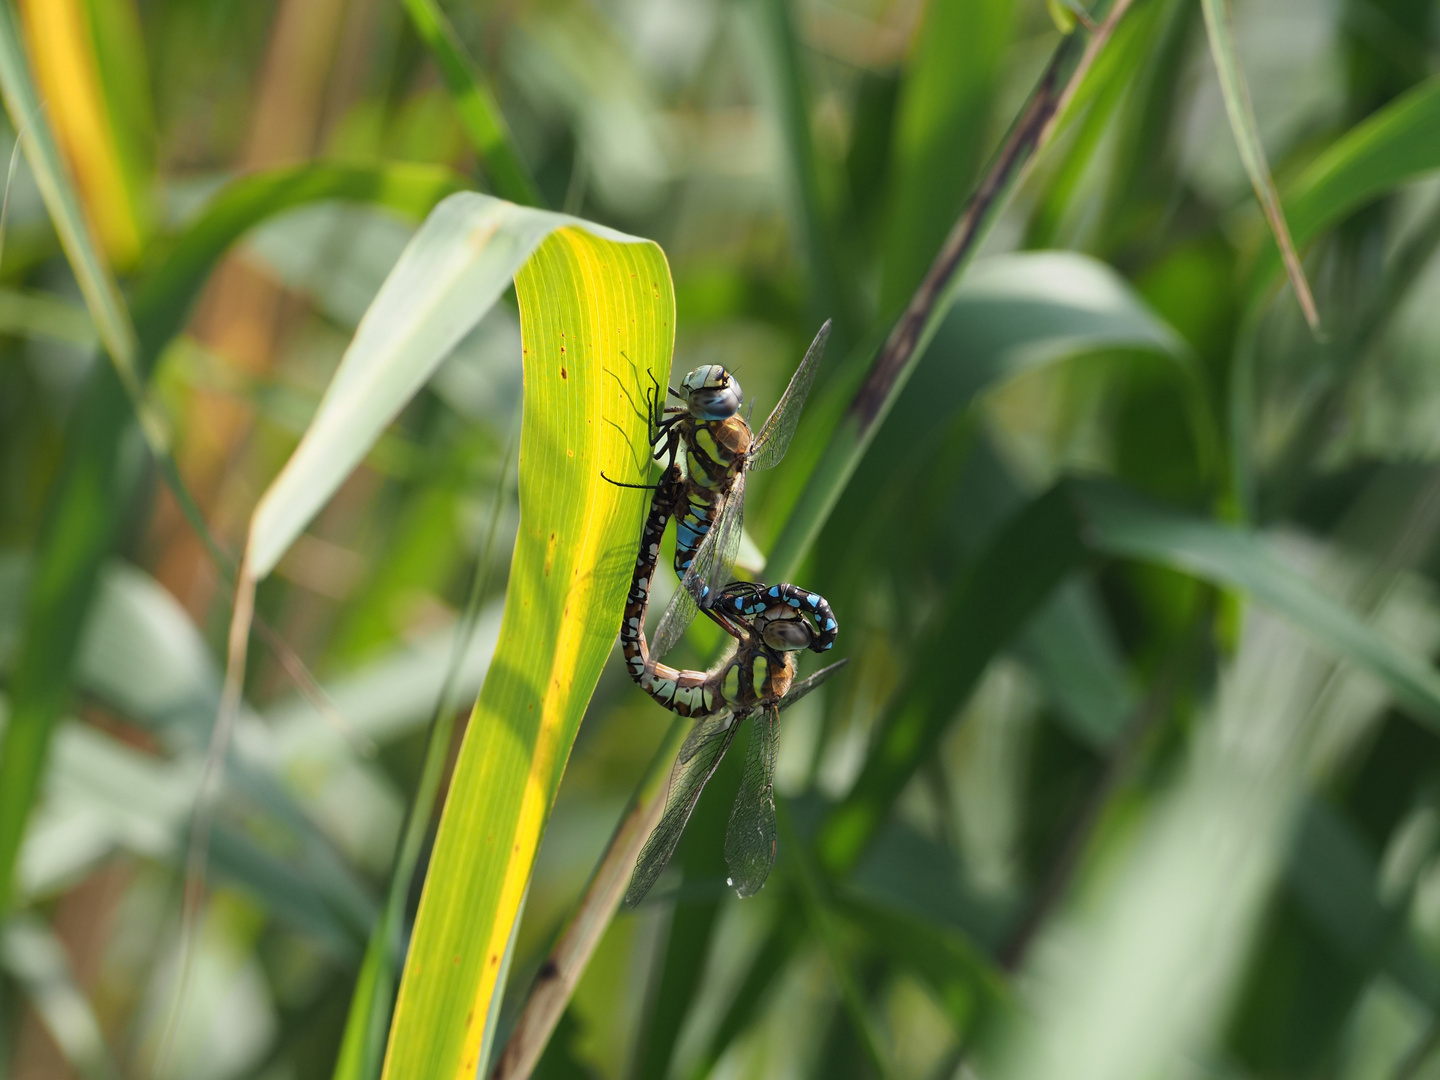 Dragonfly mating season